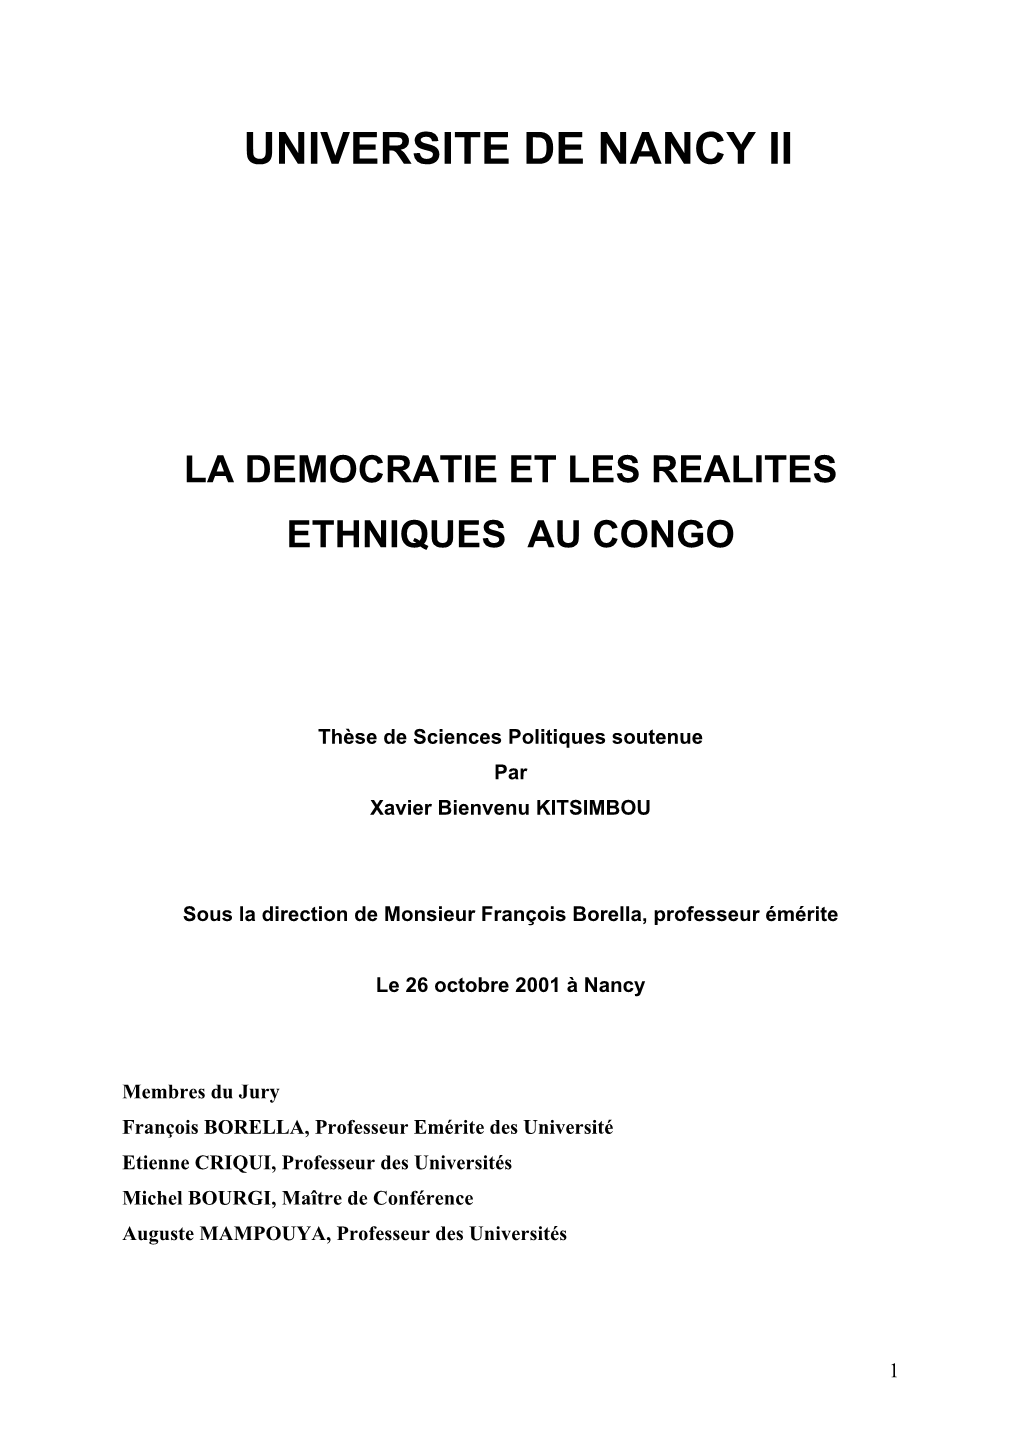 La Démocratie Et Les Réalités Ethniques Au Congo, Thèse De